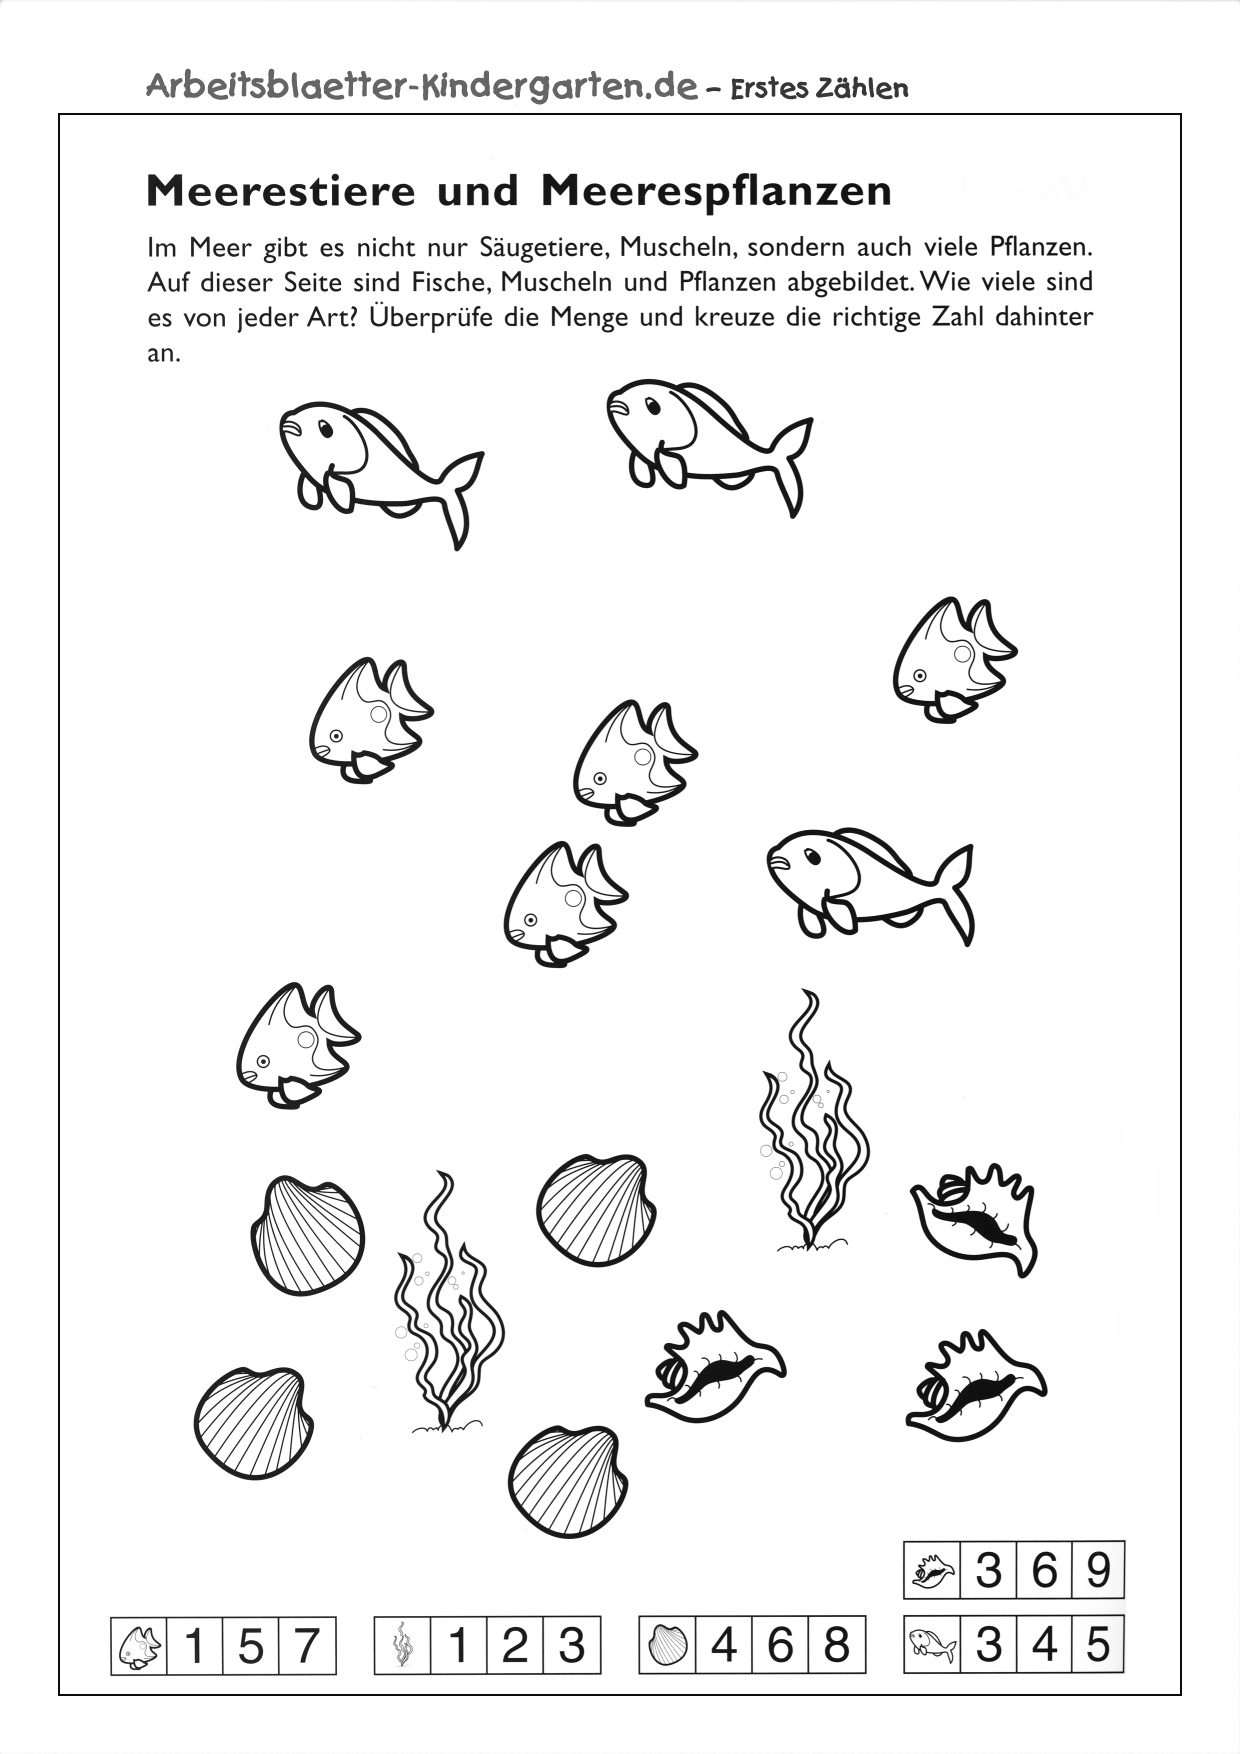 Arbeitsblatt Erstes Zaehlen - Fische zählen